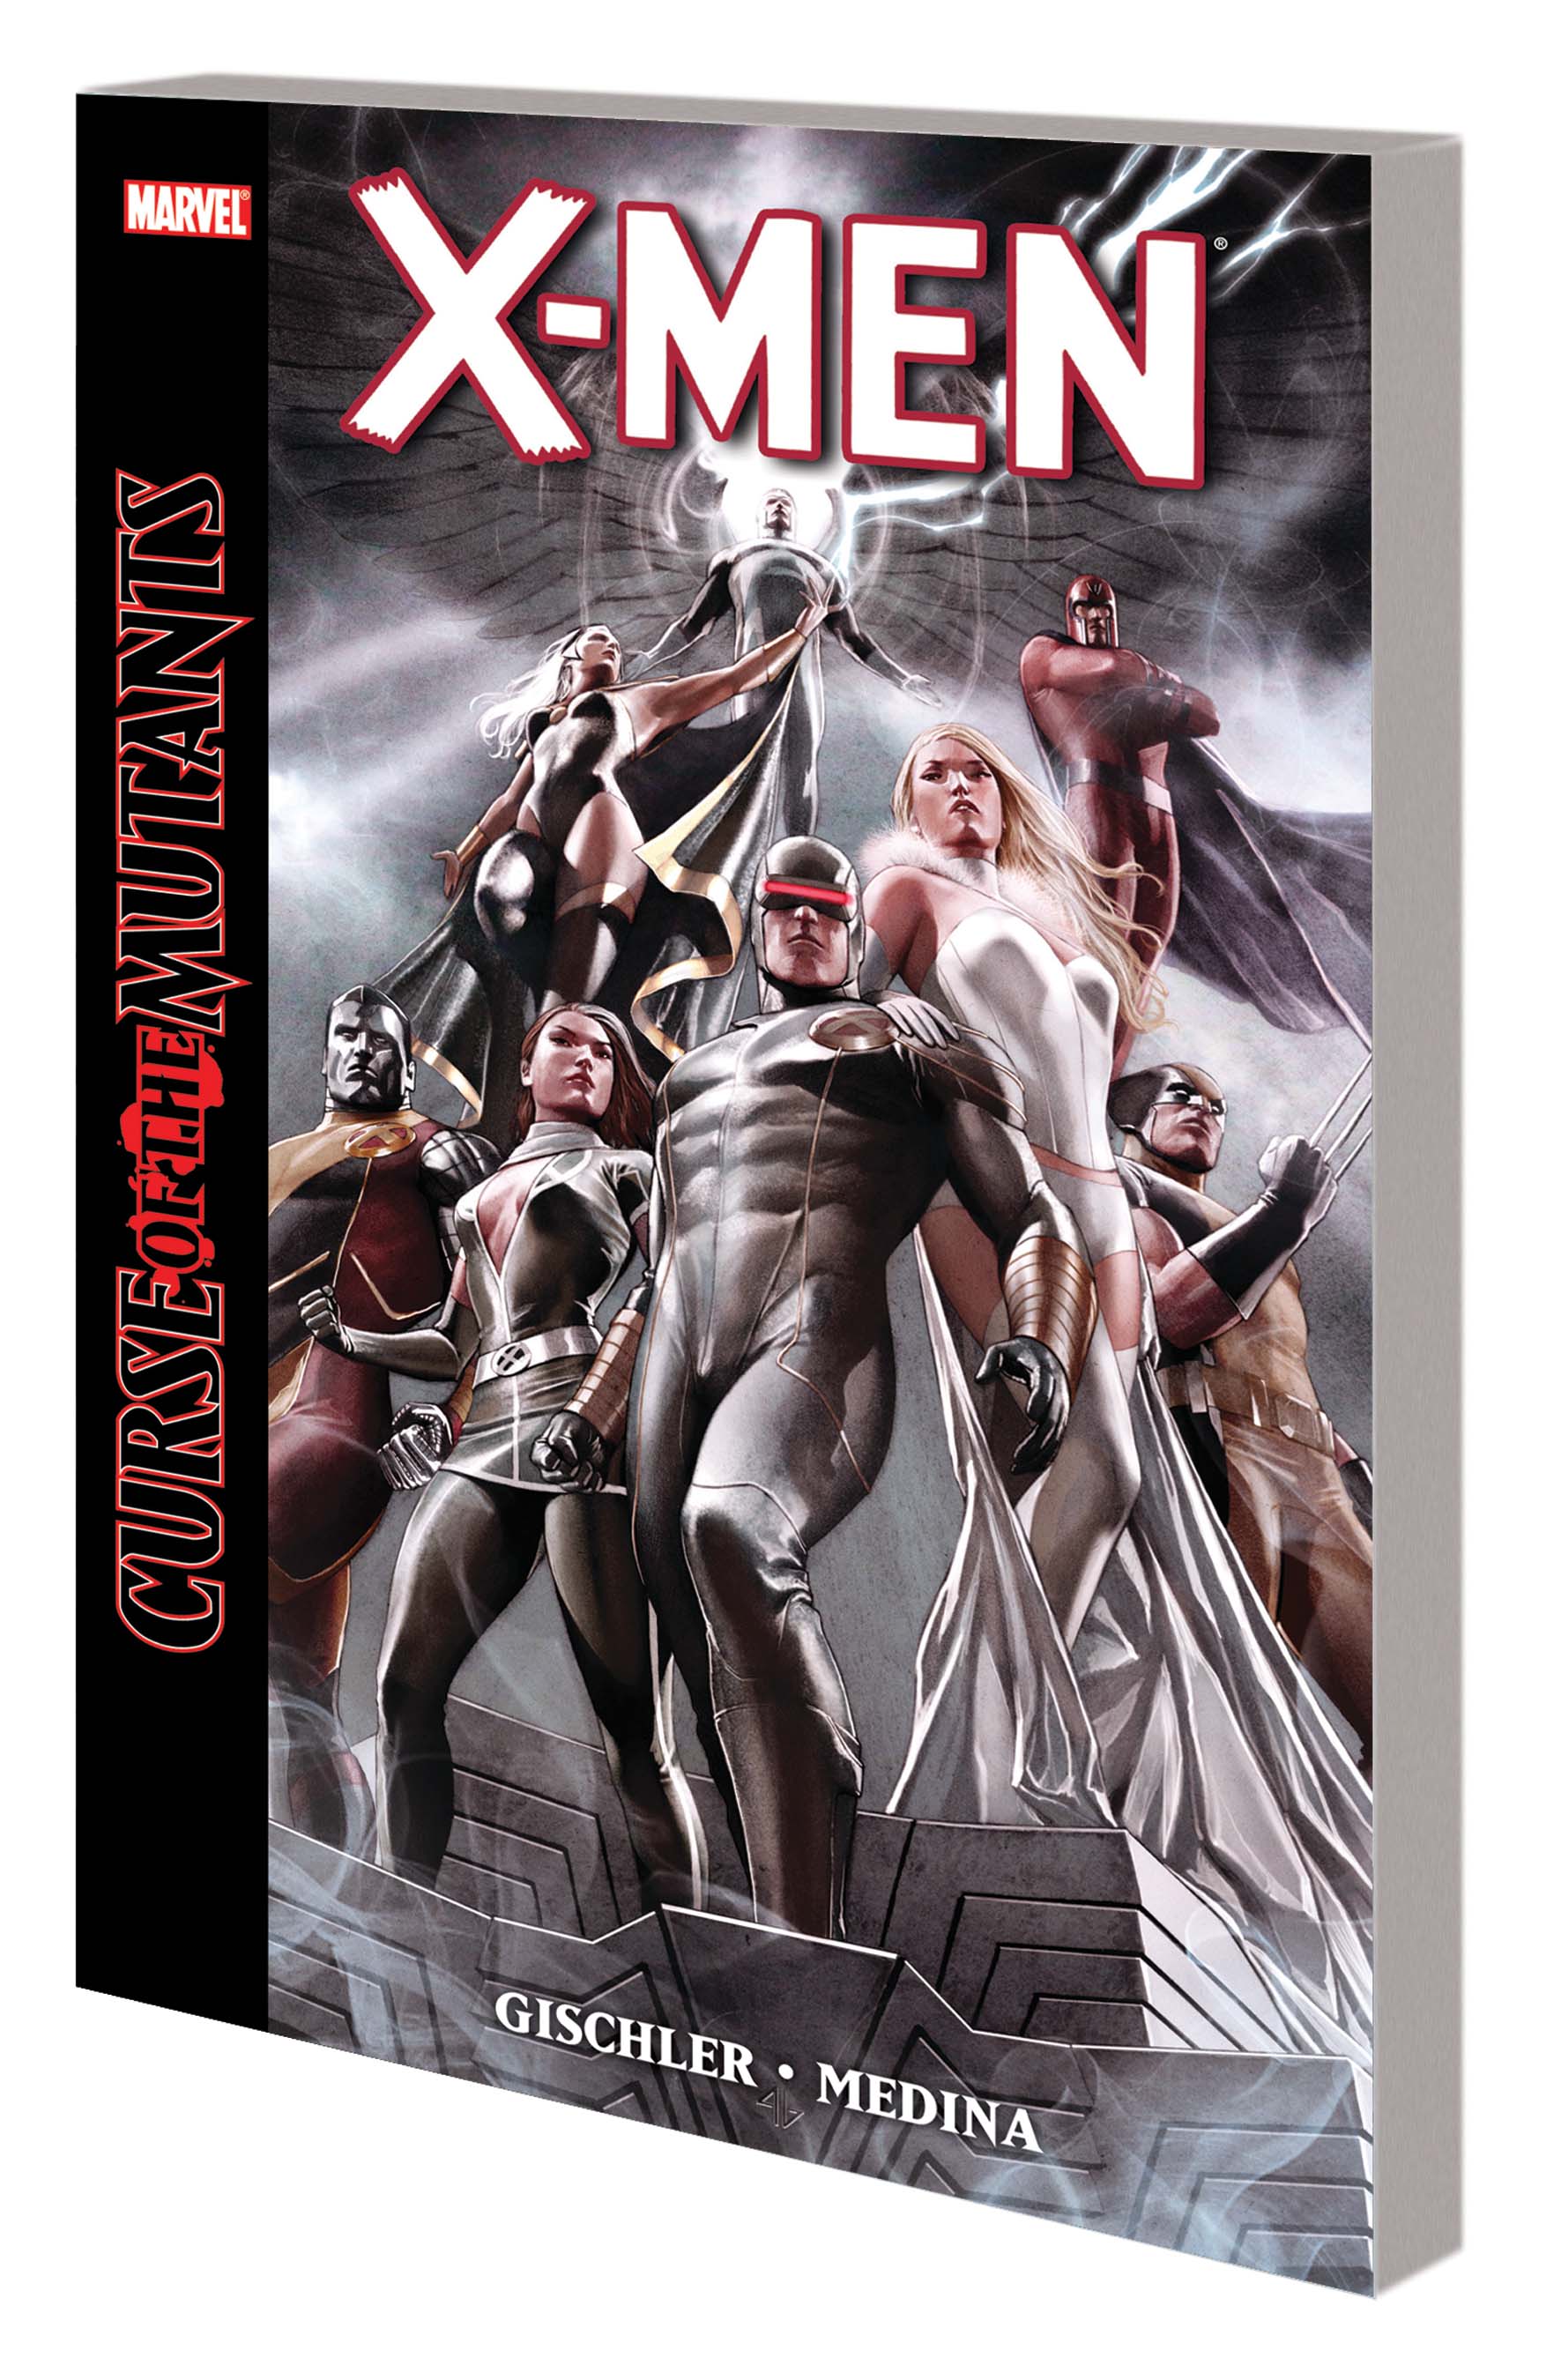 X-Men Curse of the Mutants #1 Marvel Comics vf/nm CB3004 